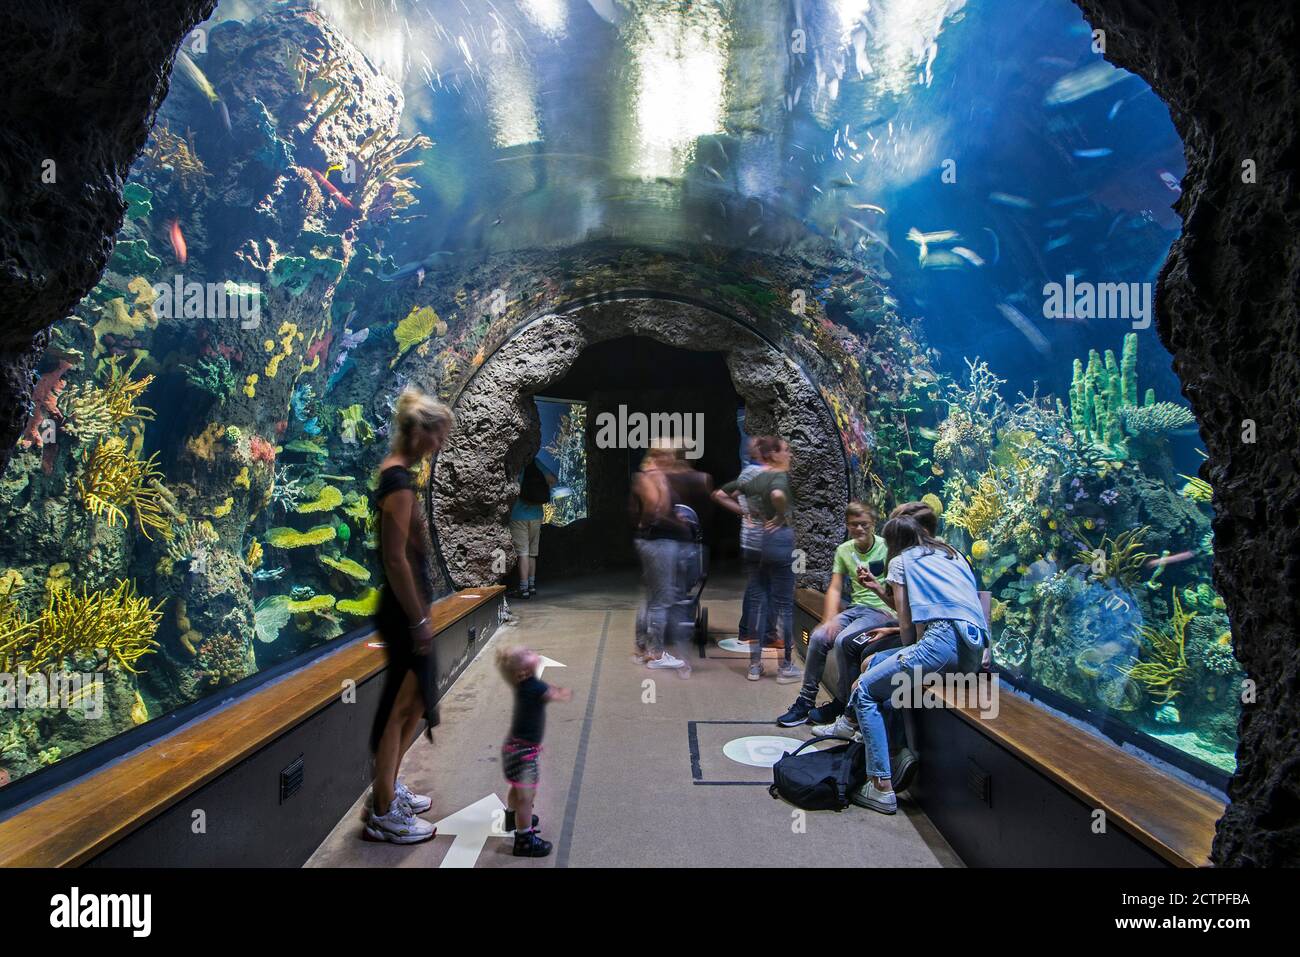 Visiteurs observant des poissons d'eau salée à Oceanium, aquarium géant à Diergaarde Blijdorp Zoo / Rotterdam Zoo, Hollande du Sud, pays-Bas Banque D'Images